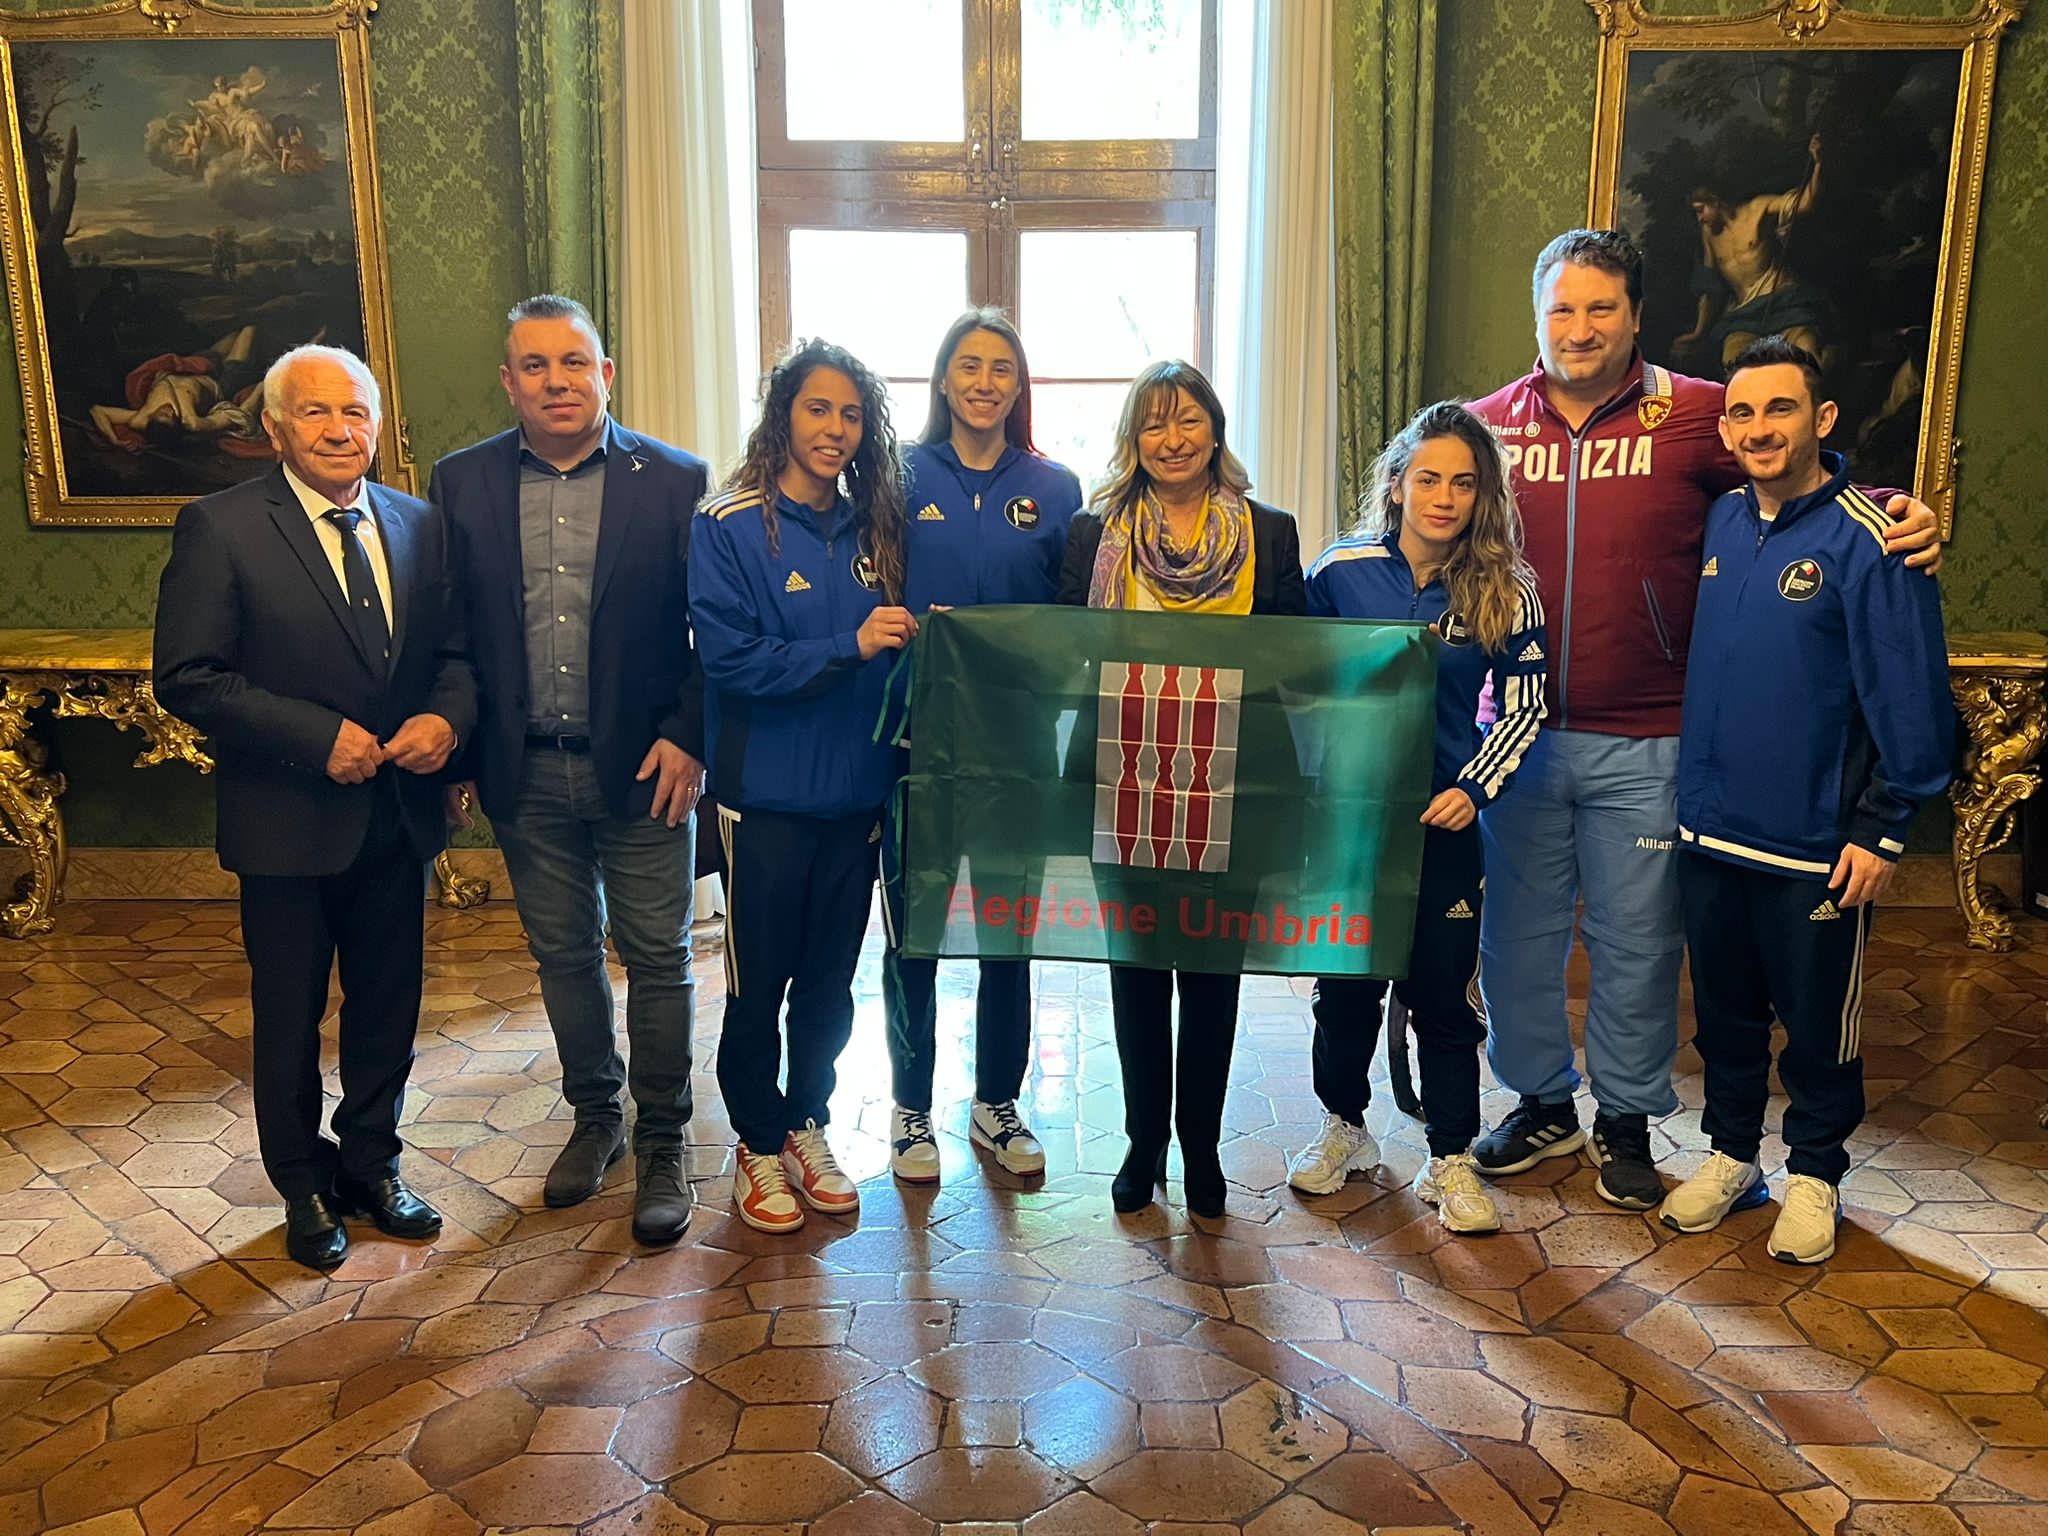 Le Azzurre Irma Testa, Sirine Chaarabi e Giordana Sorrentino ricevuto dalla Presidente Regione Umbria Donatella Tesei